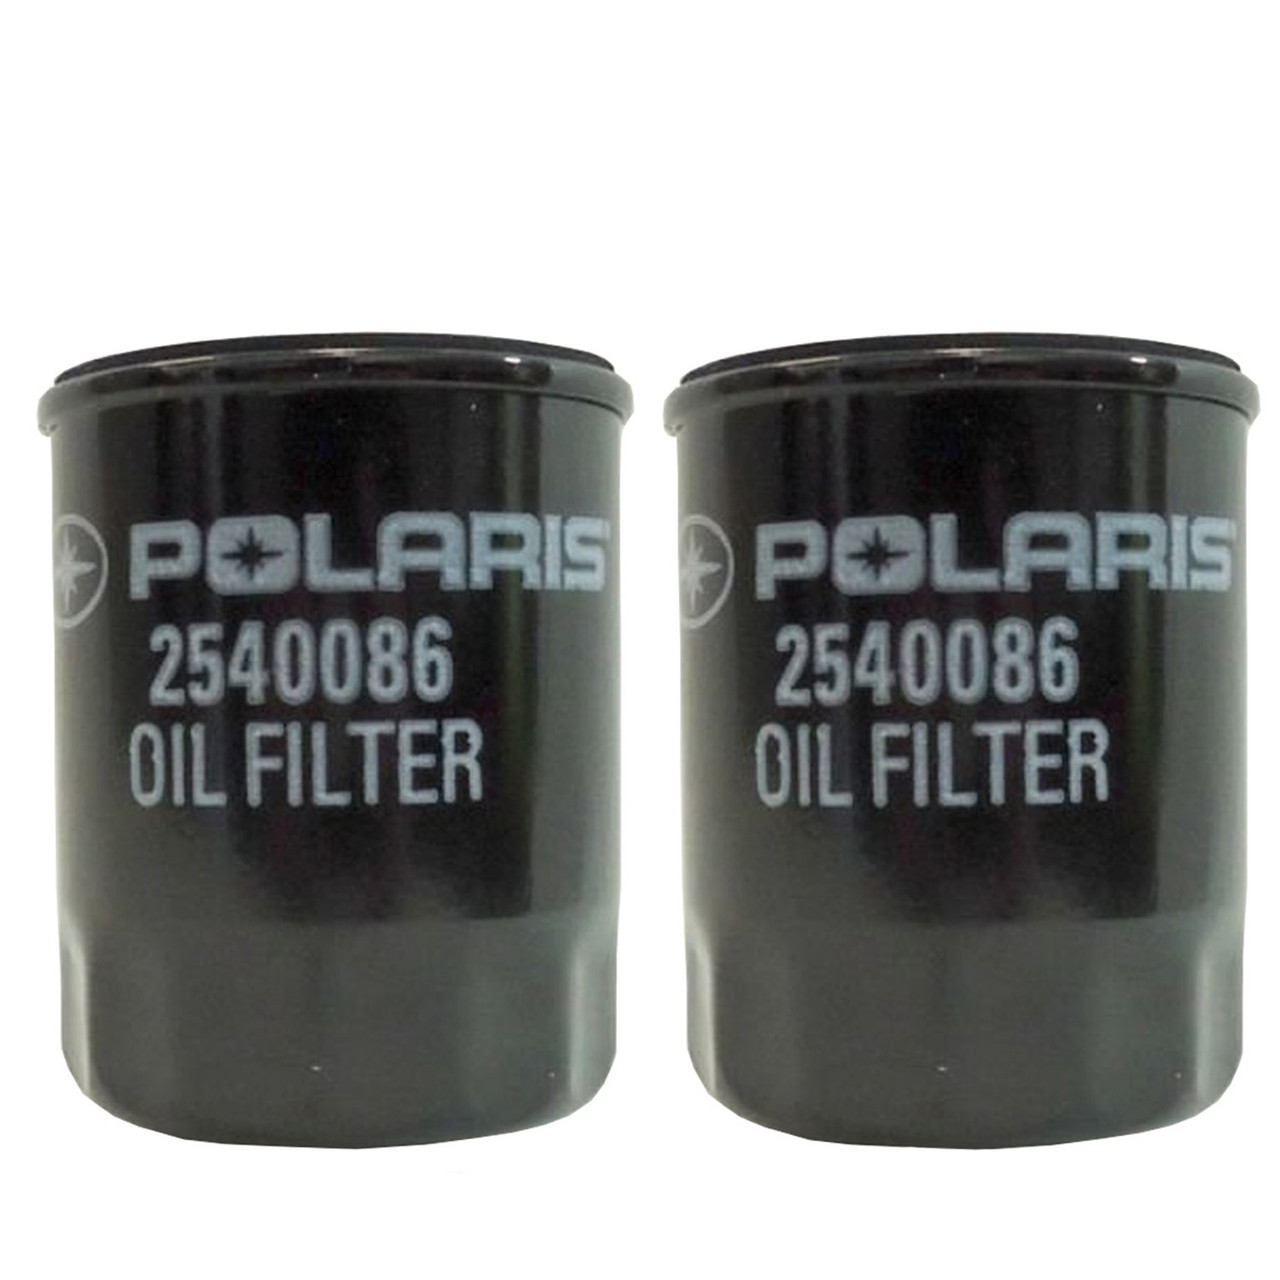 Polaris New OEM ATV/UTV 10 Micron Oil Filter 2 Pack, Ranger Sportsman, 2540086x2